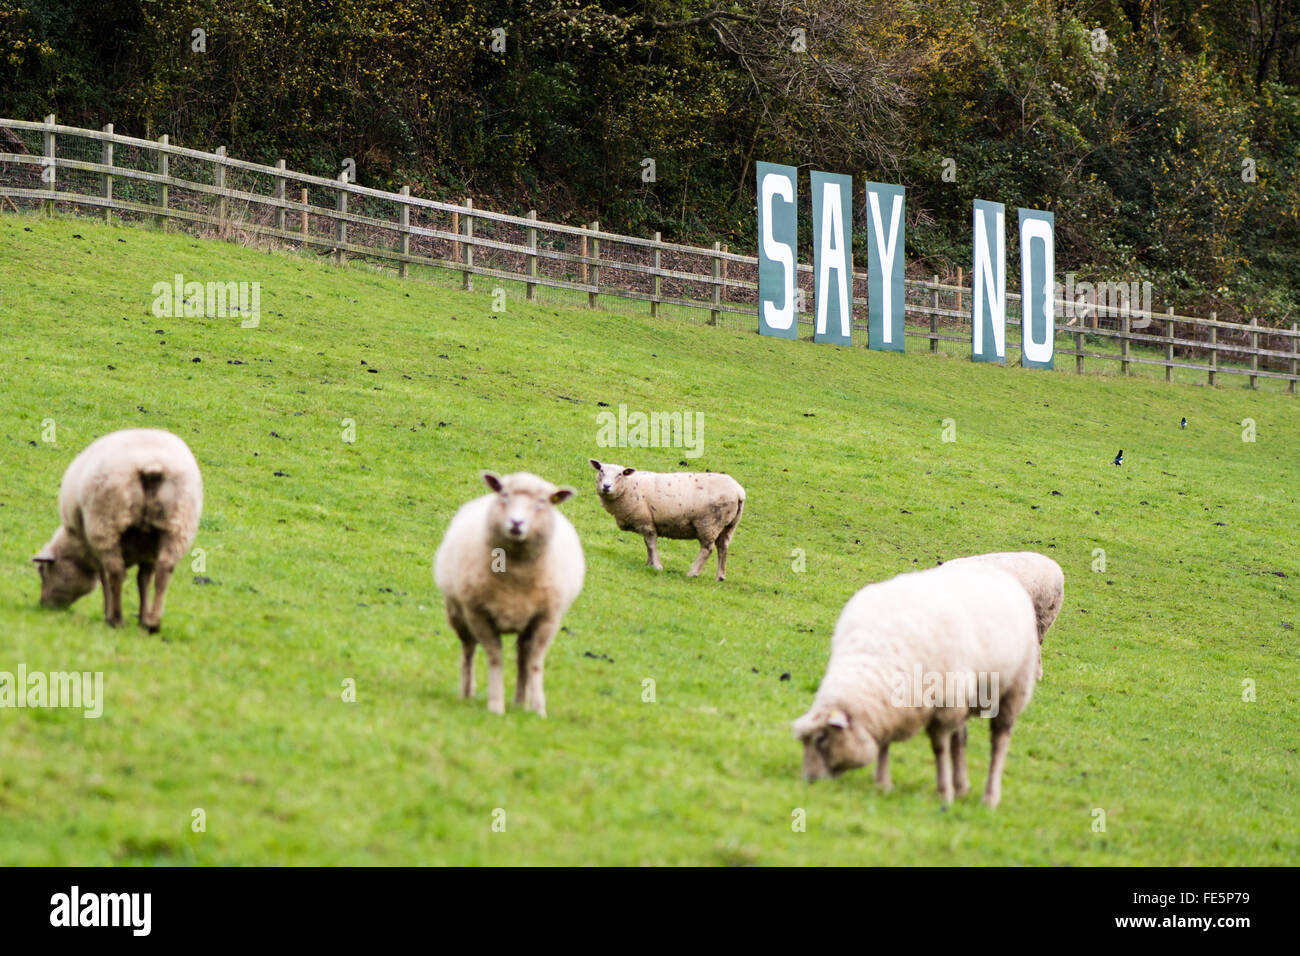 BATH, Regno Unito - 11 novembre 2015 dire nessun segno con le pecore. Un segno che protestavano piani per la costruzione di un parco e ride impianto sulla terra verde Foto Stock